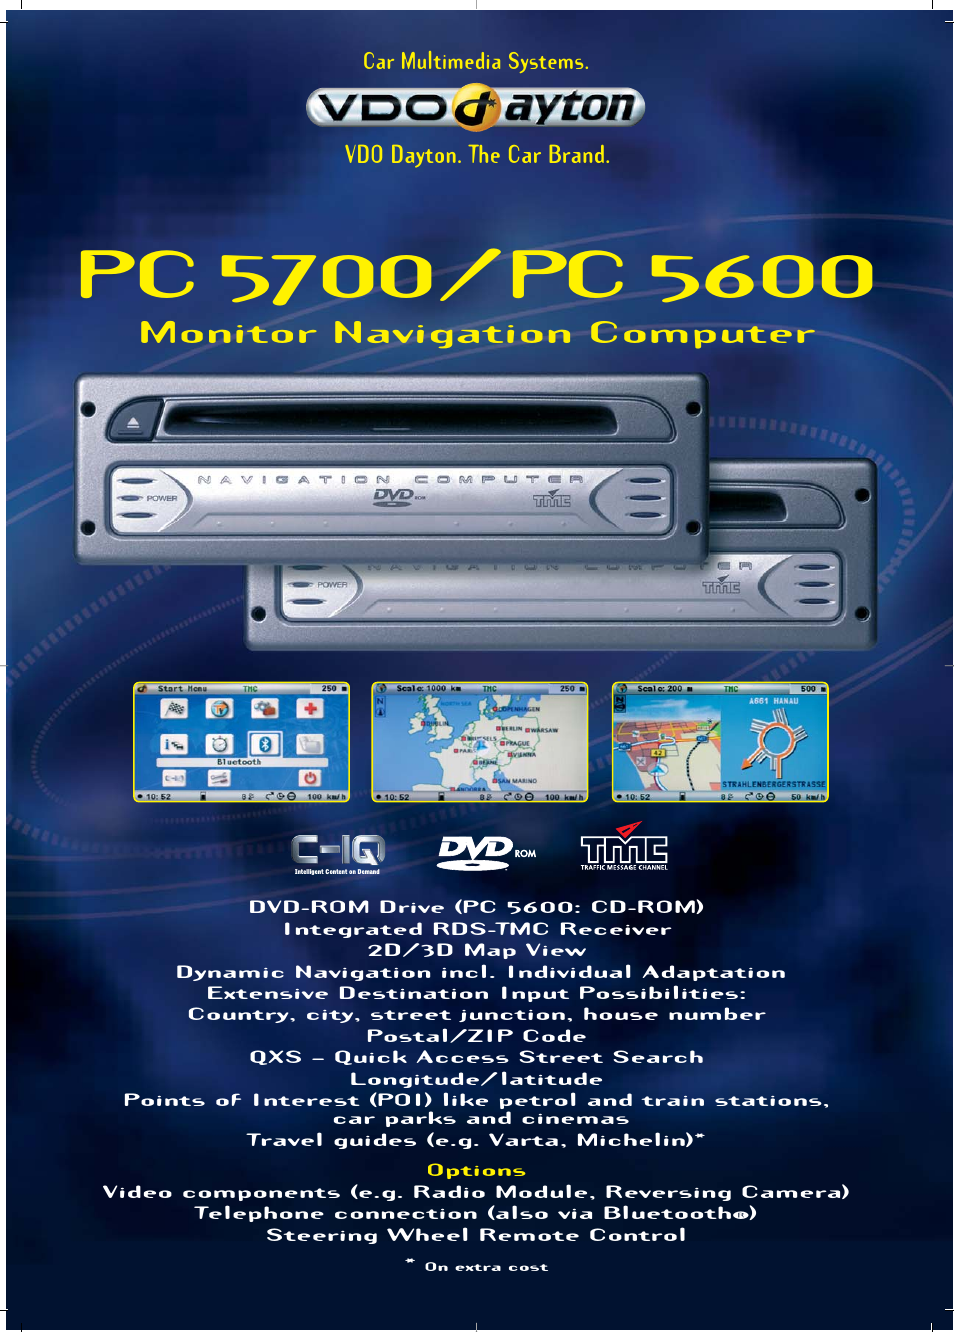 Monitor Navigation Computer PC 5700